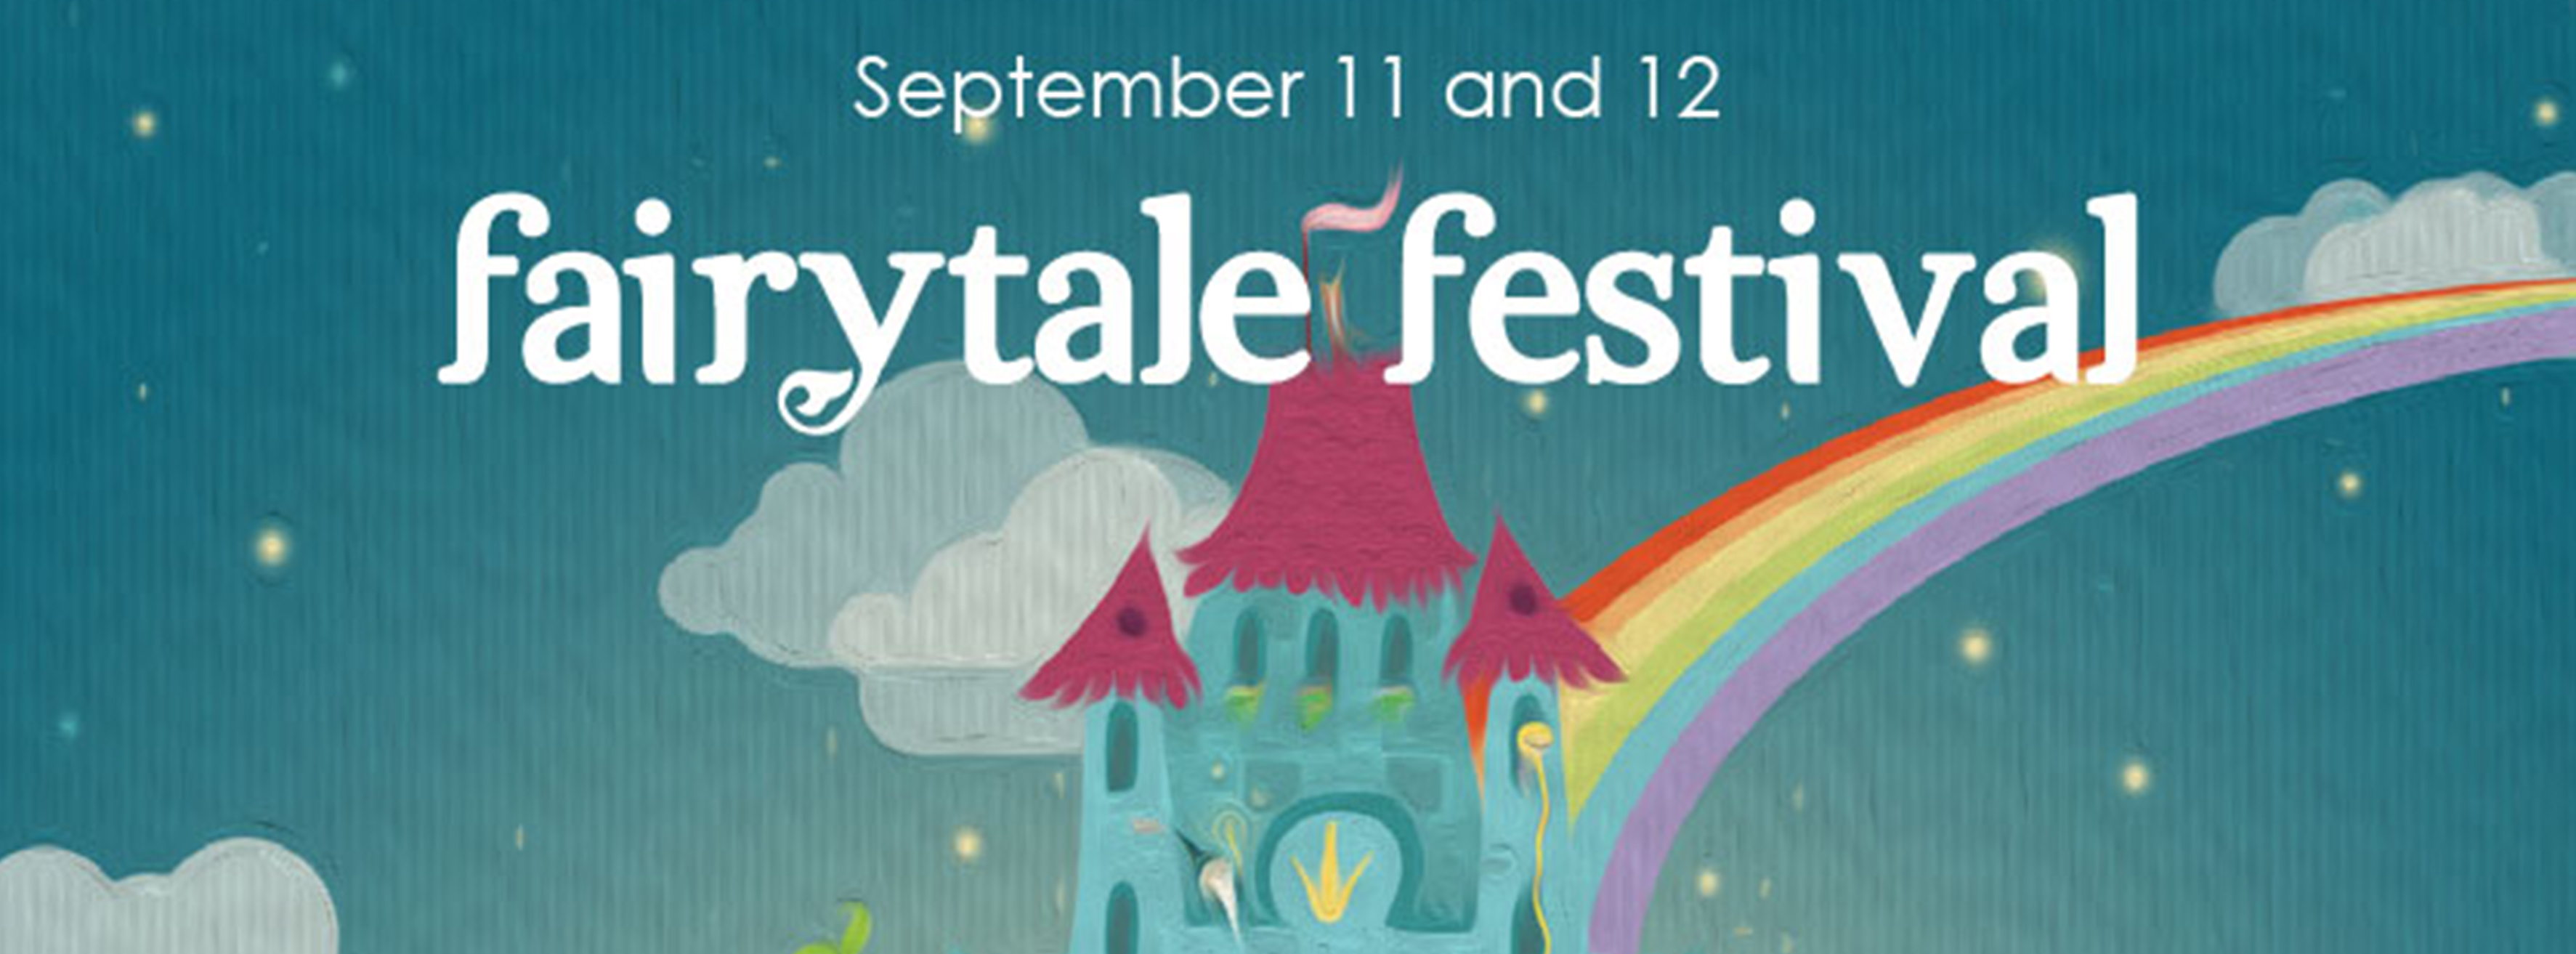 fairytale festival